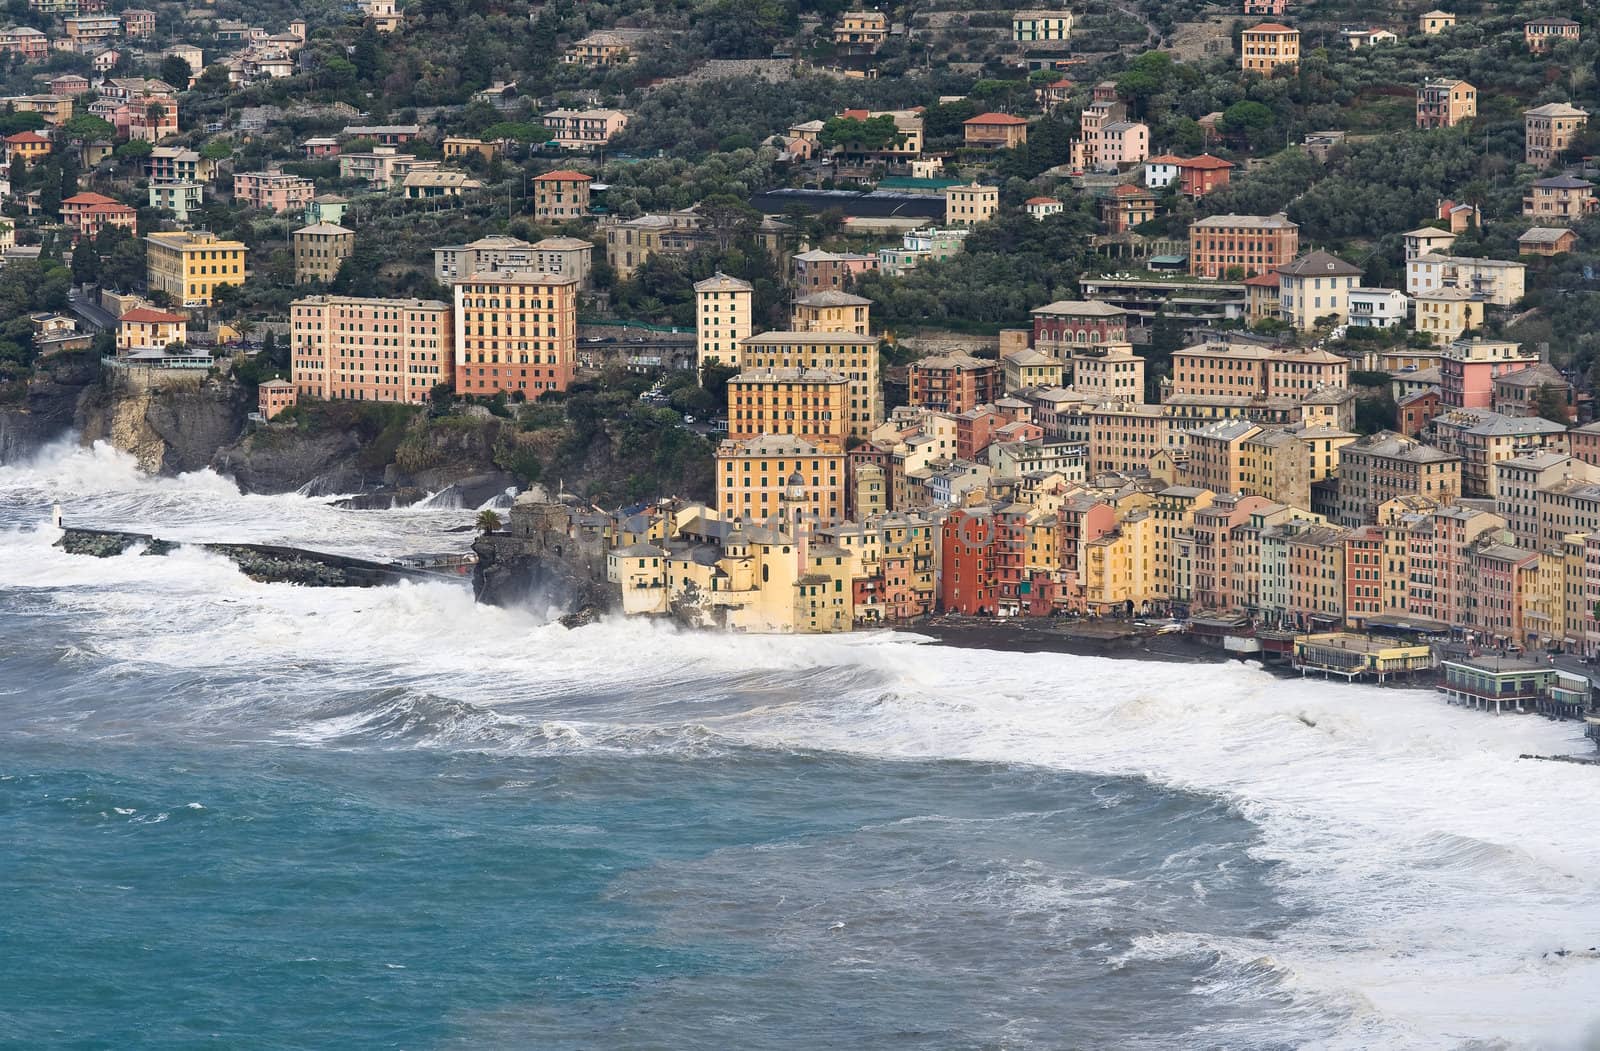 Sea storm in camogli, famous small town near Genova, italy